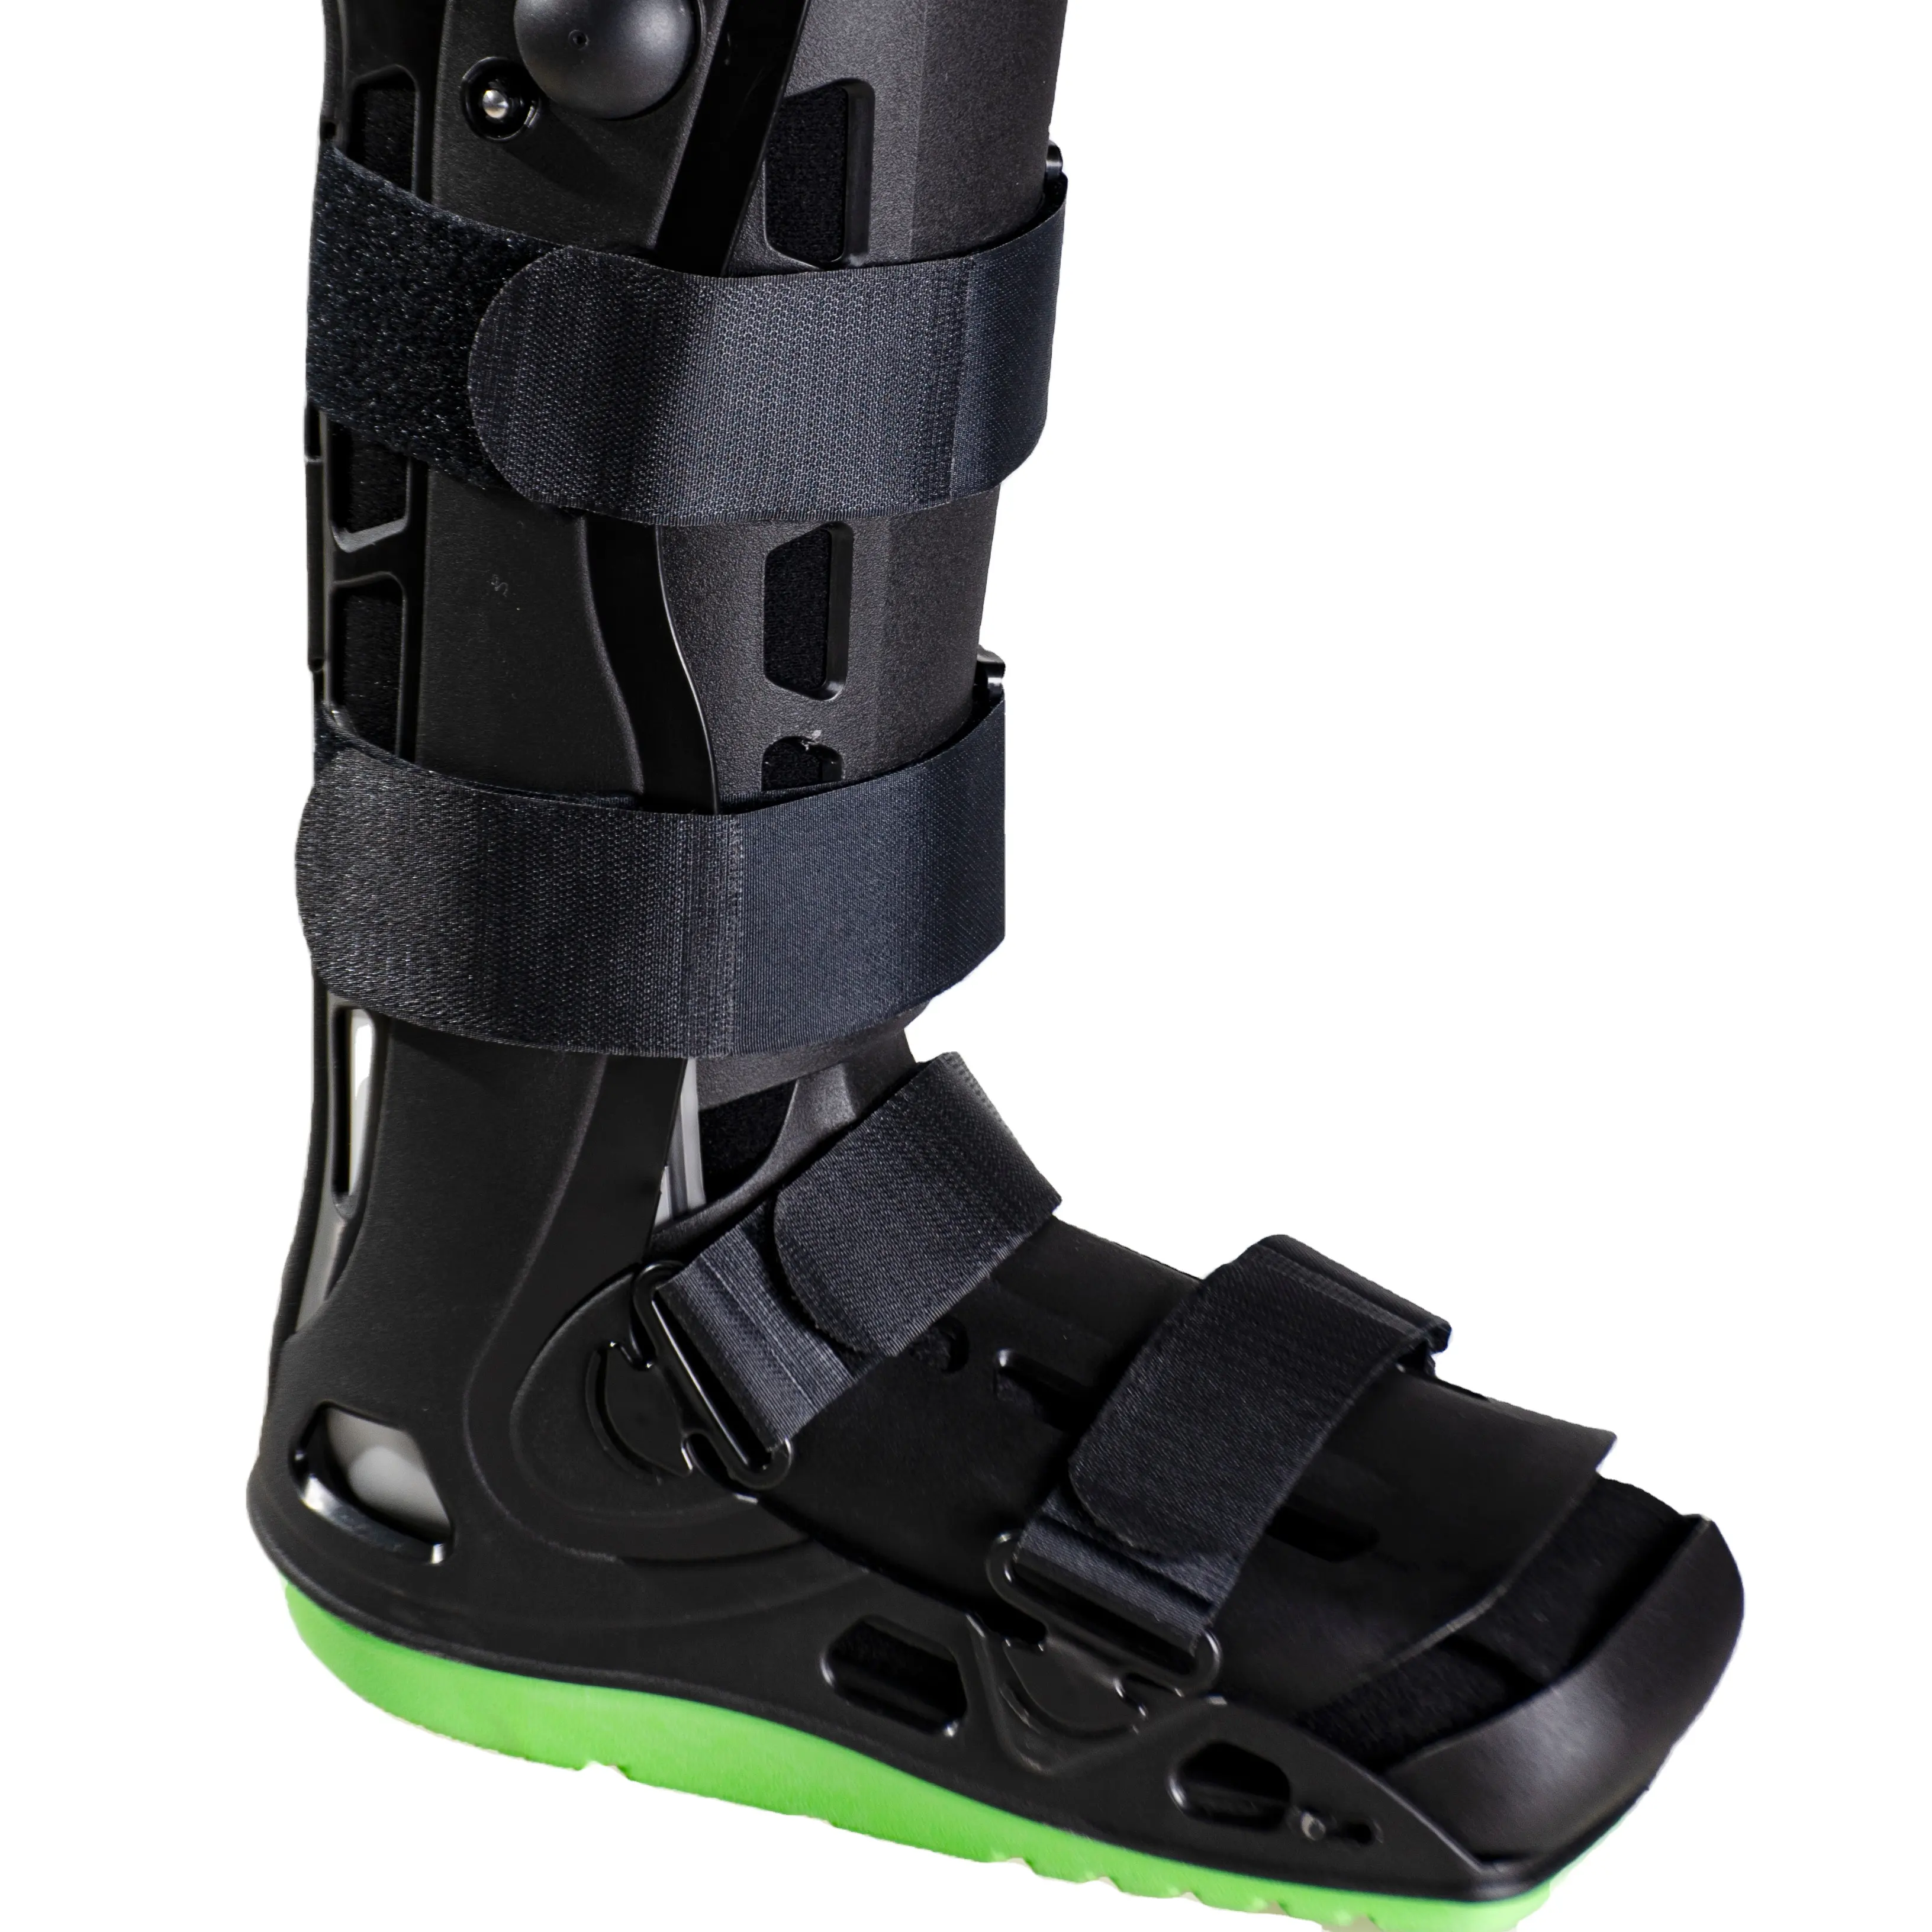 Fracture Cam Walker Brace Botte de marche orthopédique chaussures orthopédiques pour fracture botte de marche cam cheville chaussures orthopédiques médicales